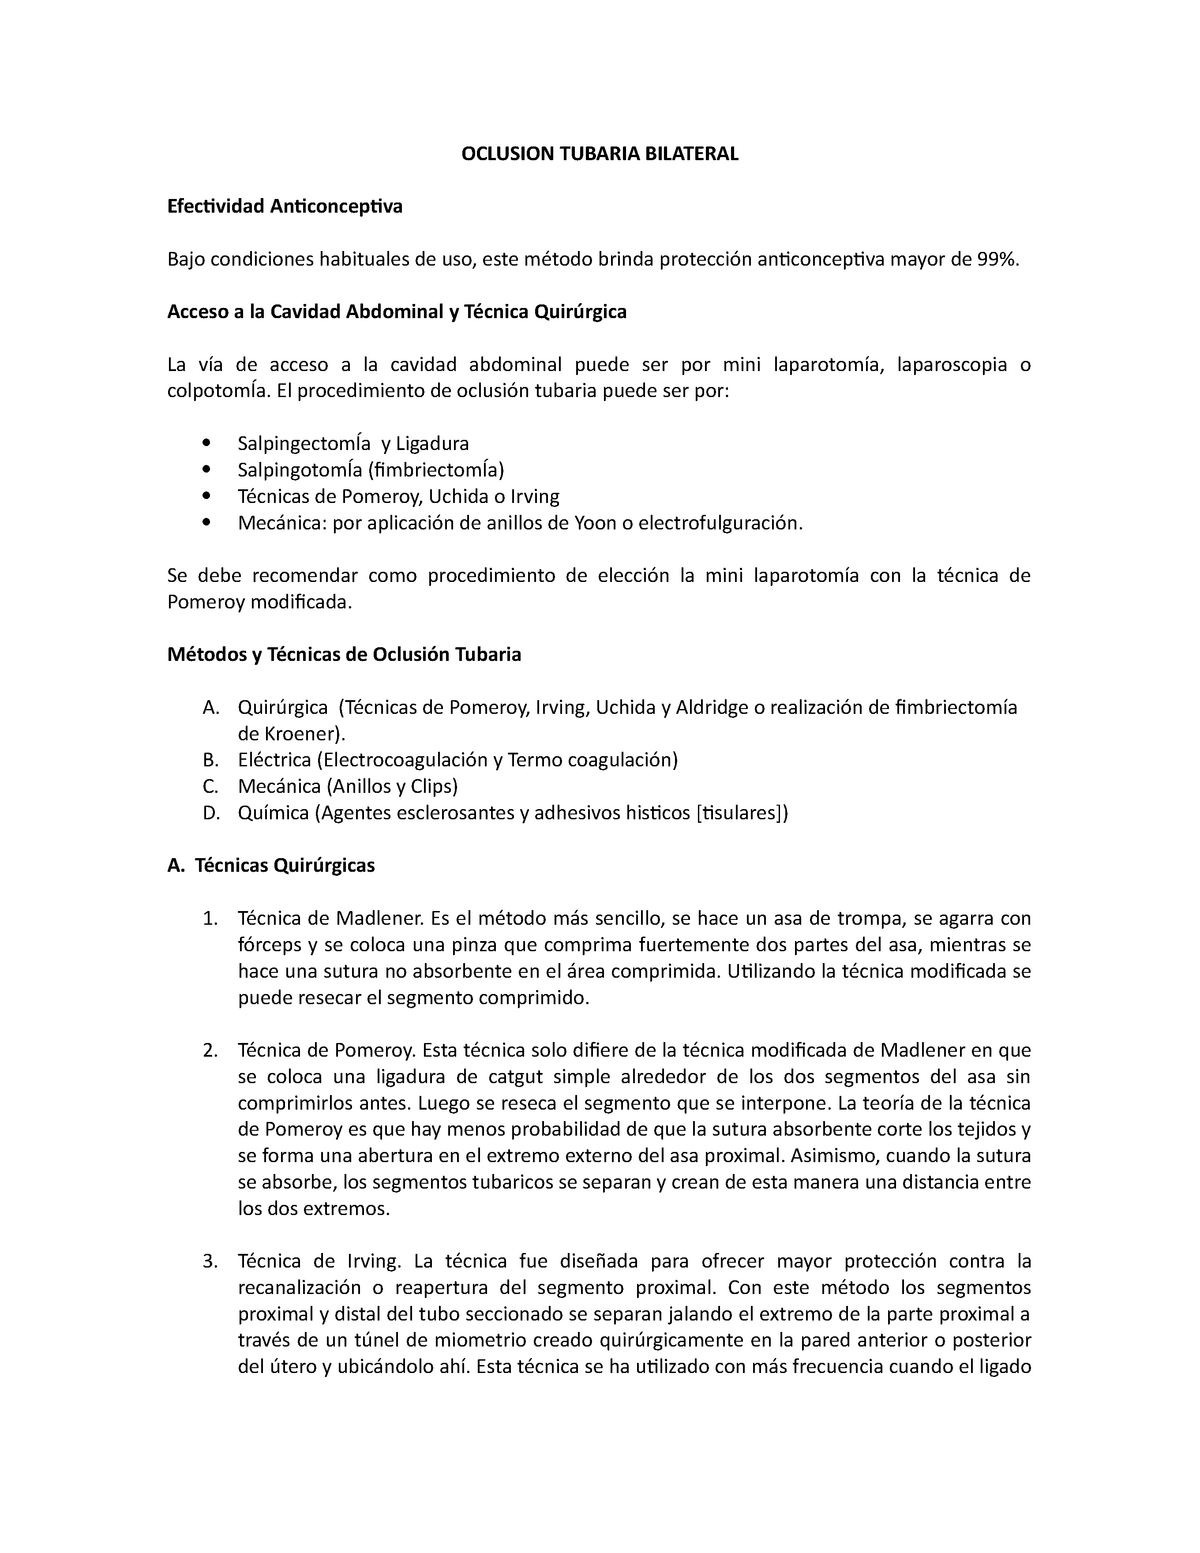 Resumen - Oclusion Tubaria Bilateral - OCLUSION TUBARIA BILATERAL ...